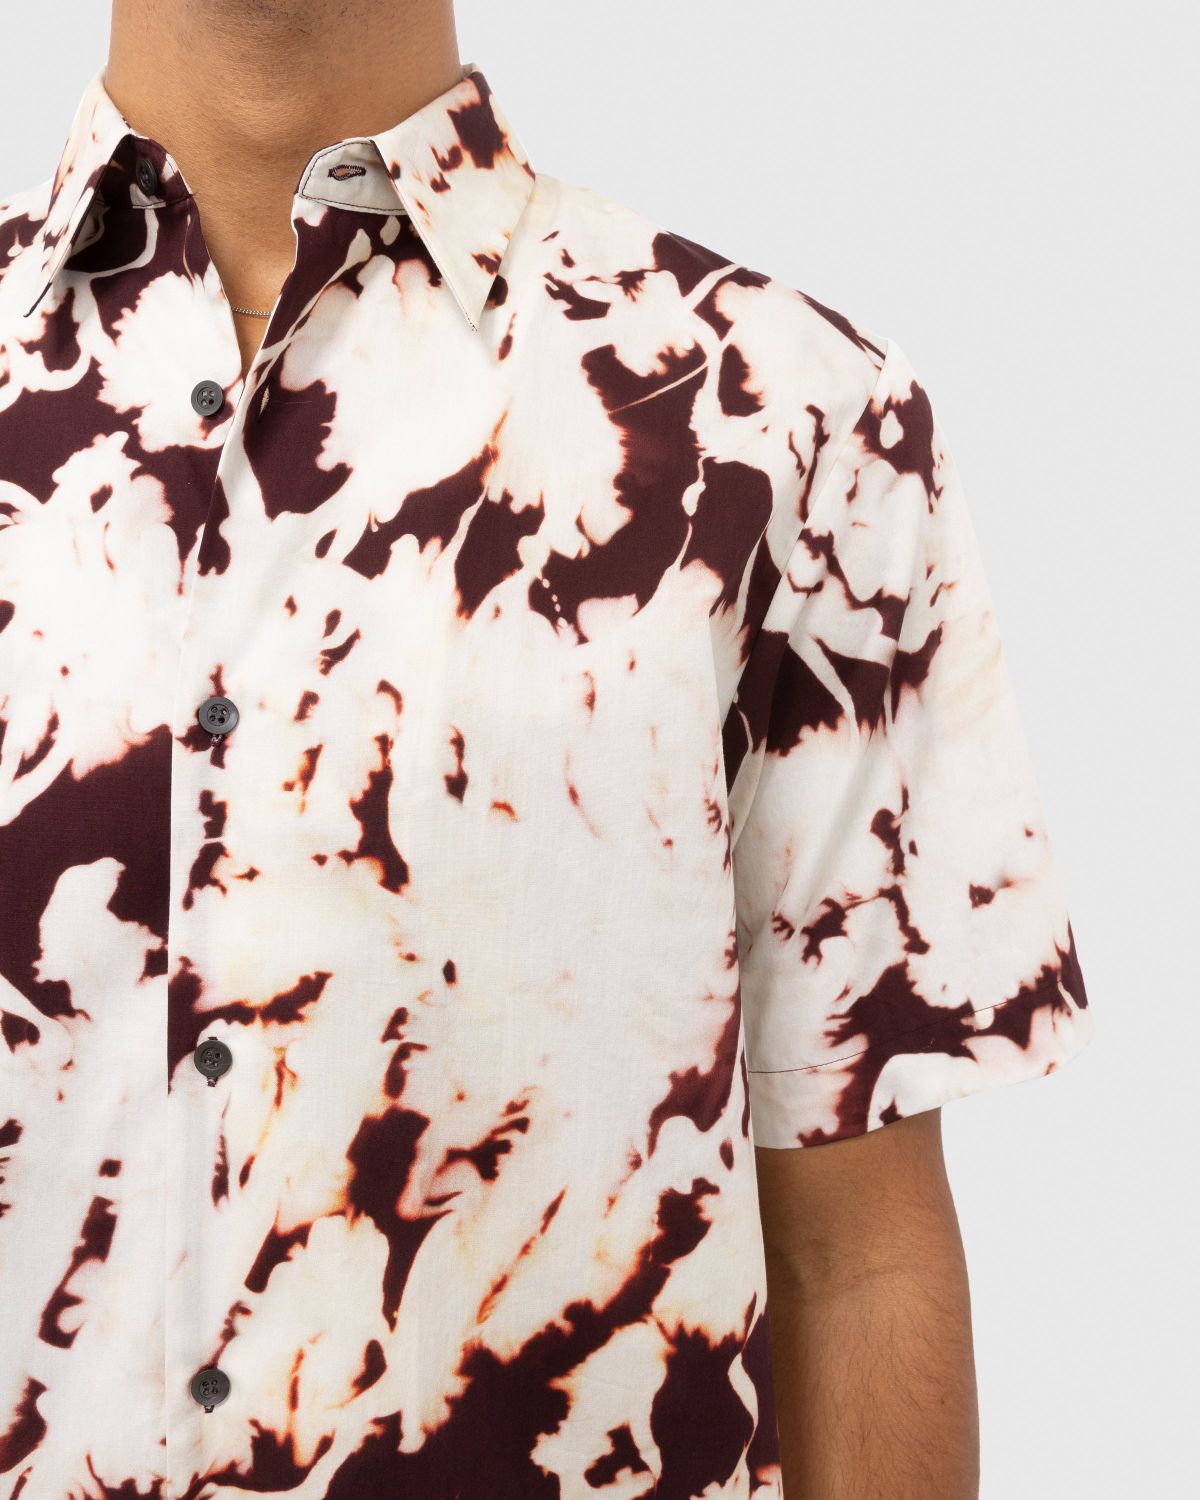 Dries van Noten – Clasen Shirt Multi - Shortsleeve Shirts - Multi - Image 5